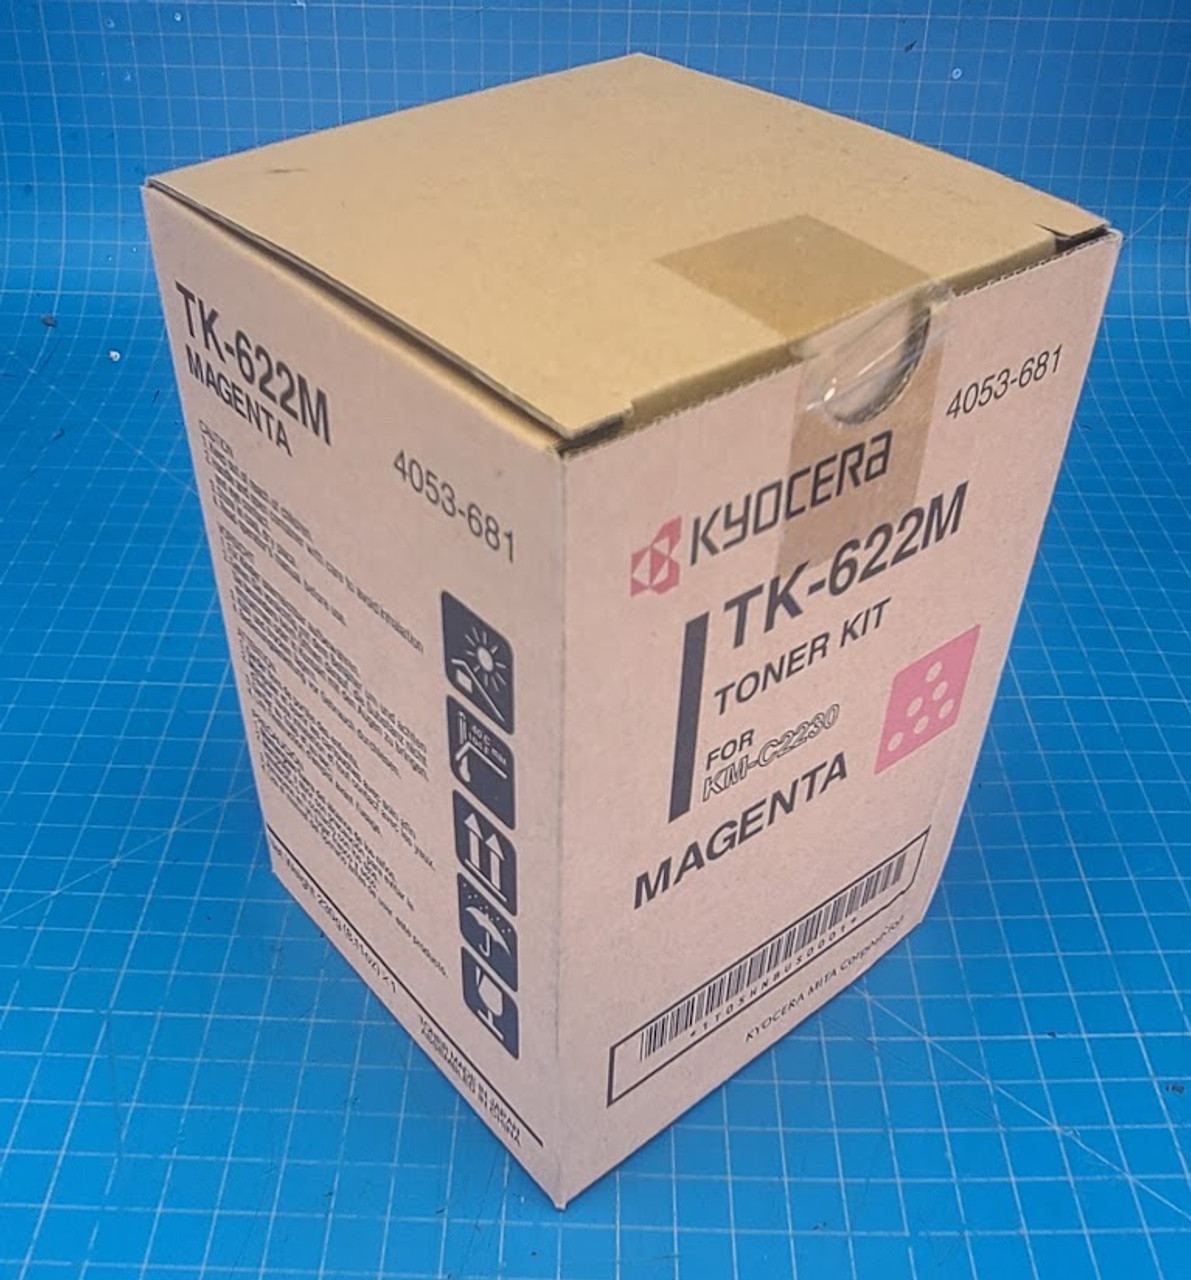 Kyocera KM-C2230 Toner Kit Magenta TK-622M